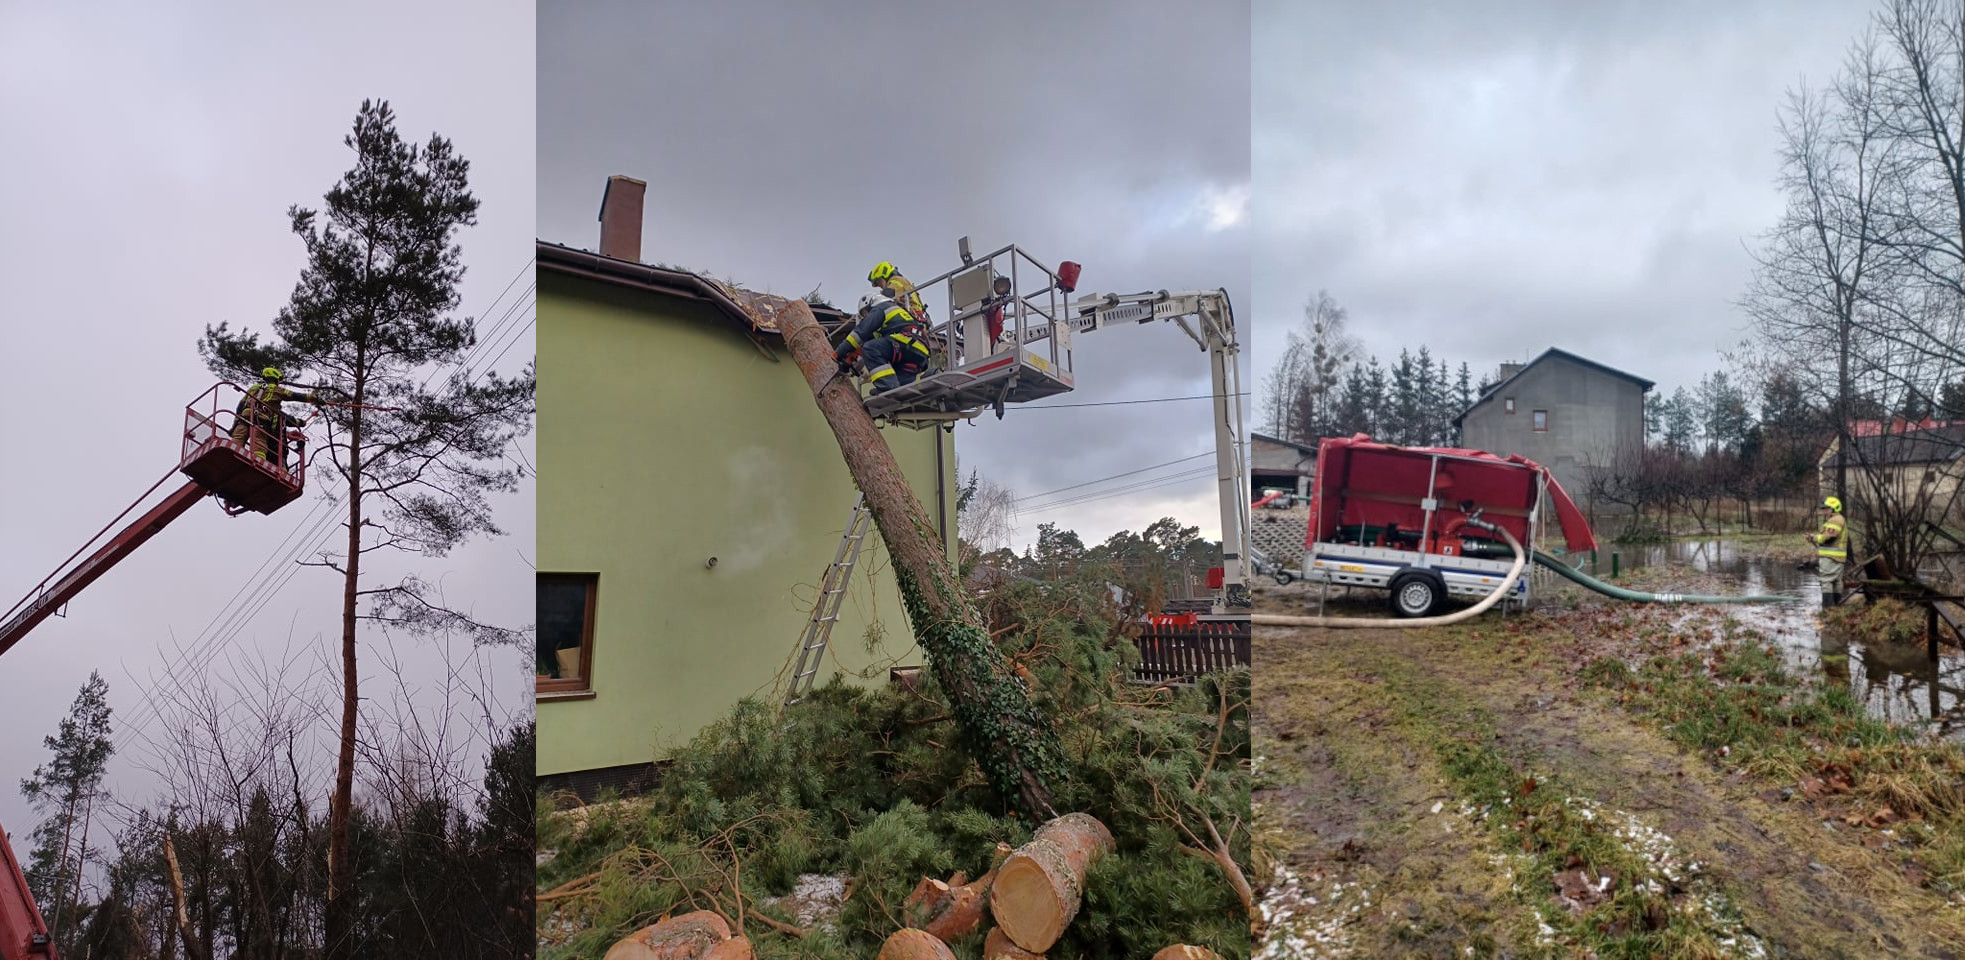 Działalność Komendy Powiatowej Państwowej Straży Pożarnej: po lewej stronie strażak na wysięgniku przy sośnie, pośrodku usuwanie powalonego drzewa z domu, po prawej stronie przepompowywanie wody.